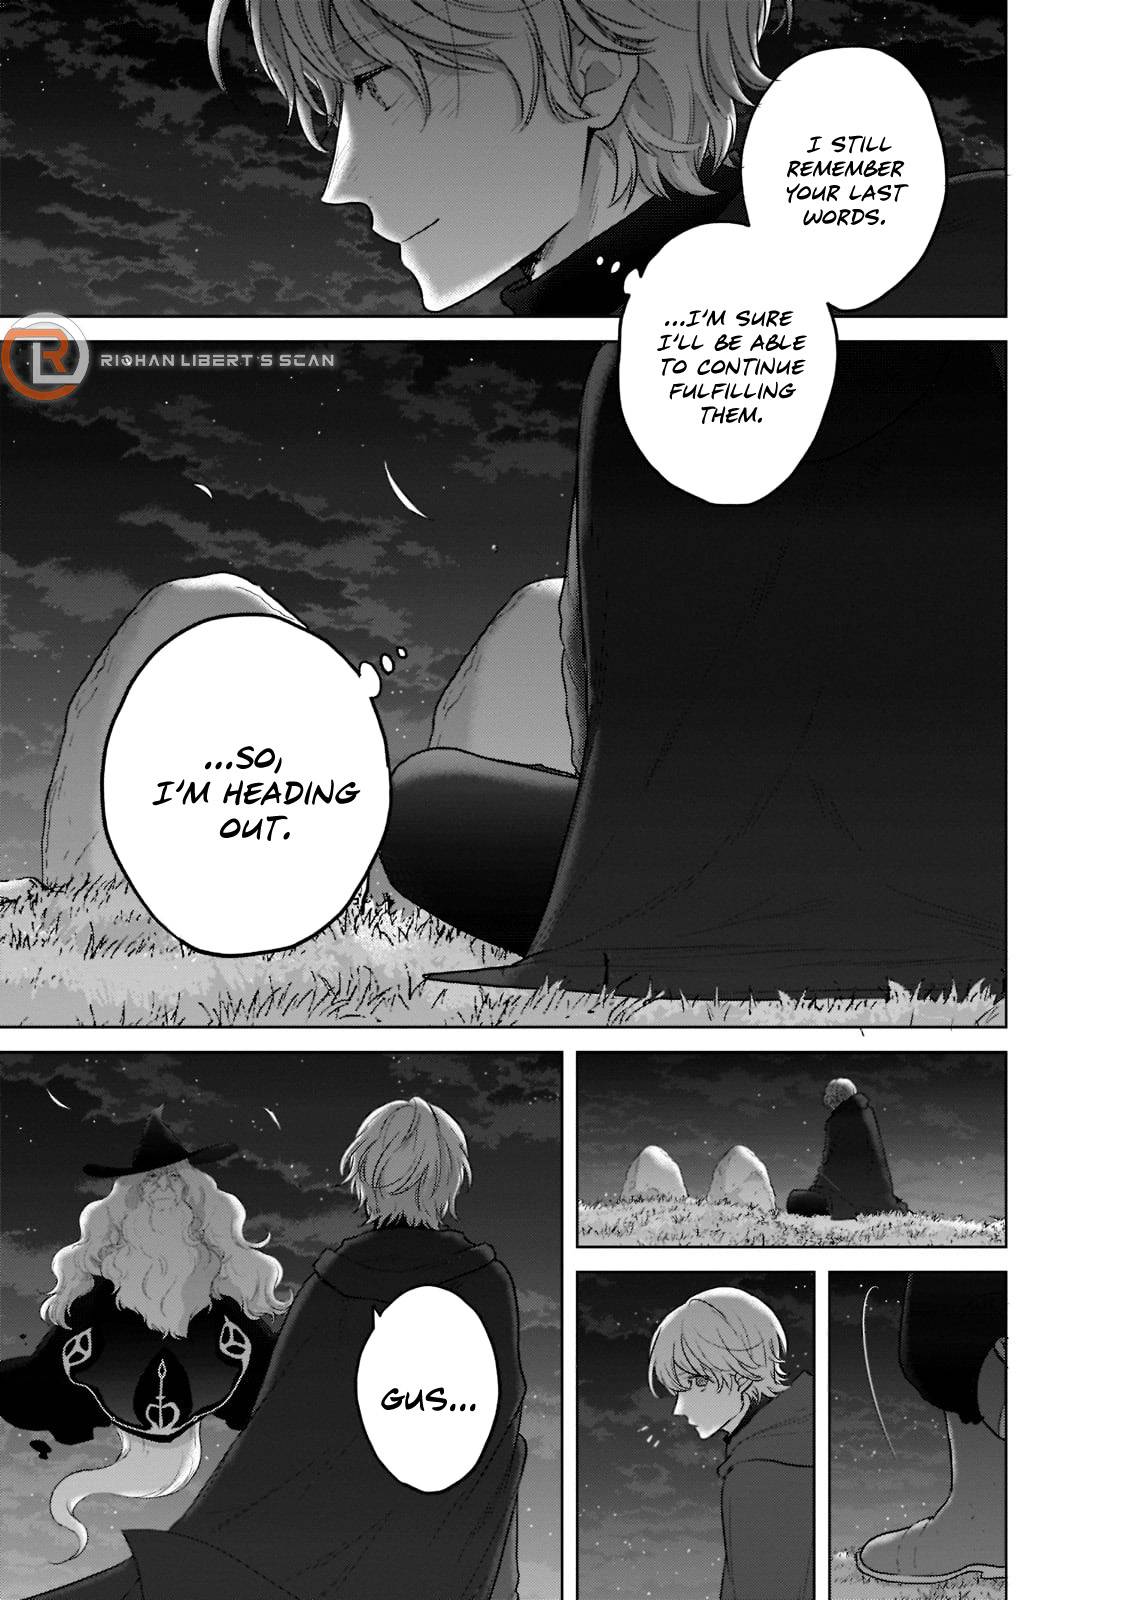 Manga: Saihate no Paladin Chapter - 42-eng-li